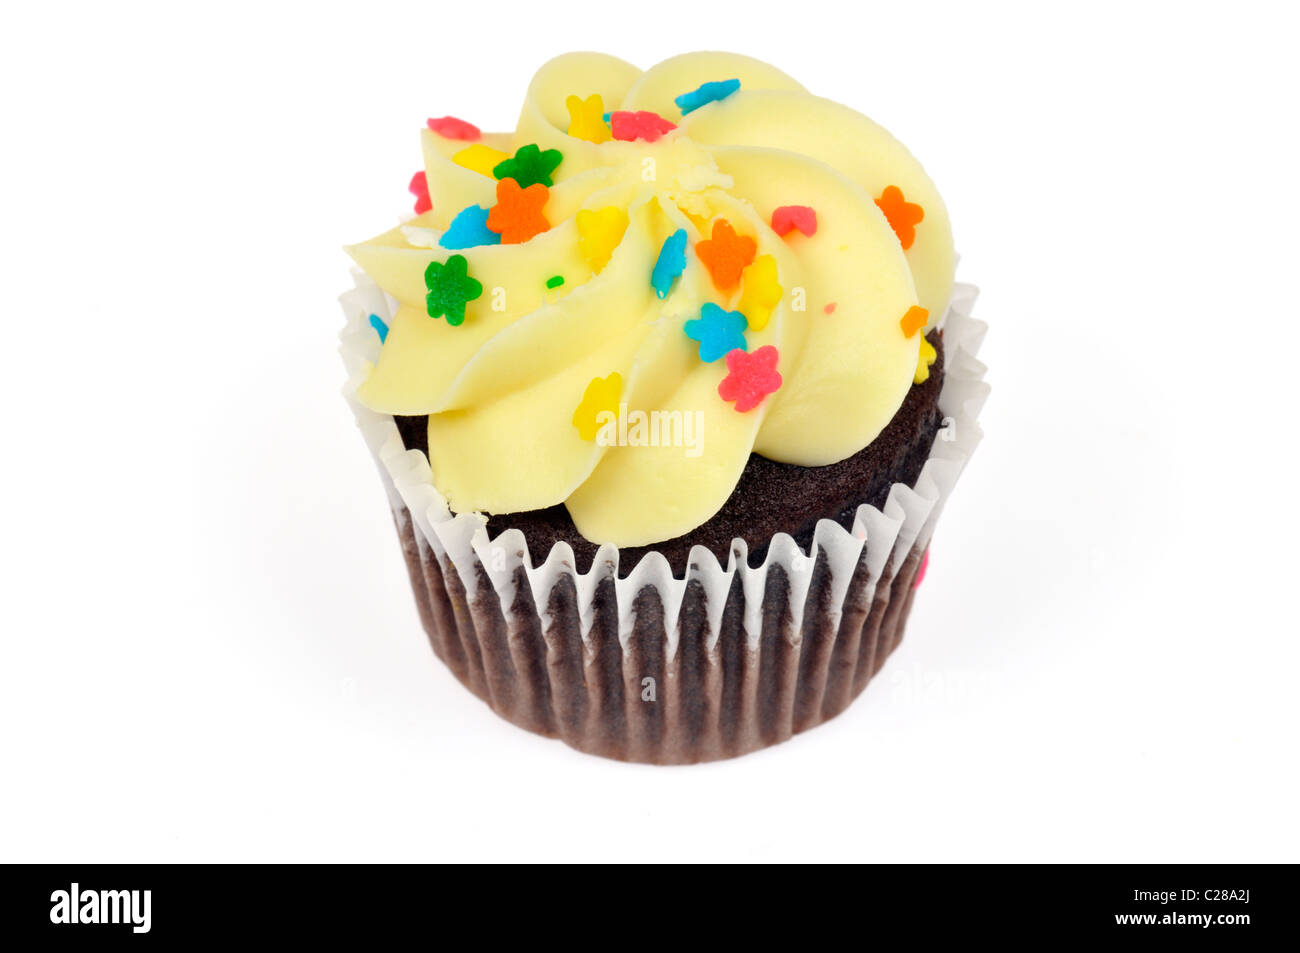 Chocolate cupcake decorado con cobertura de limón amarillo y coloridos rocía sobre fondo blanco cortado Foto de stock